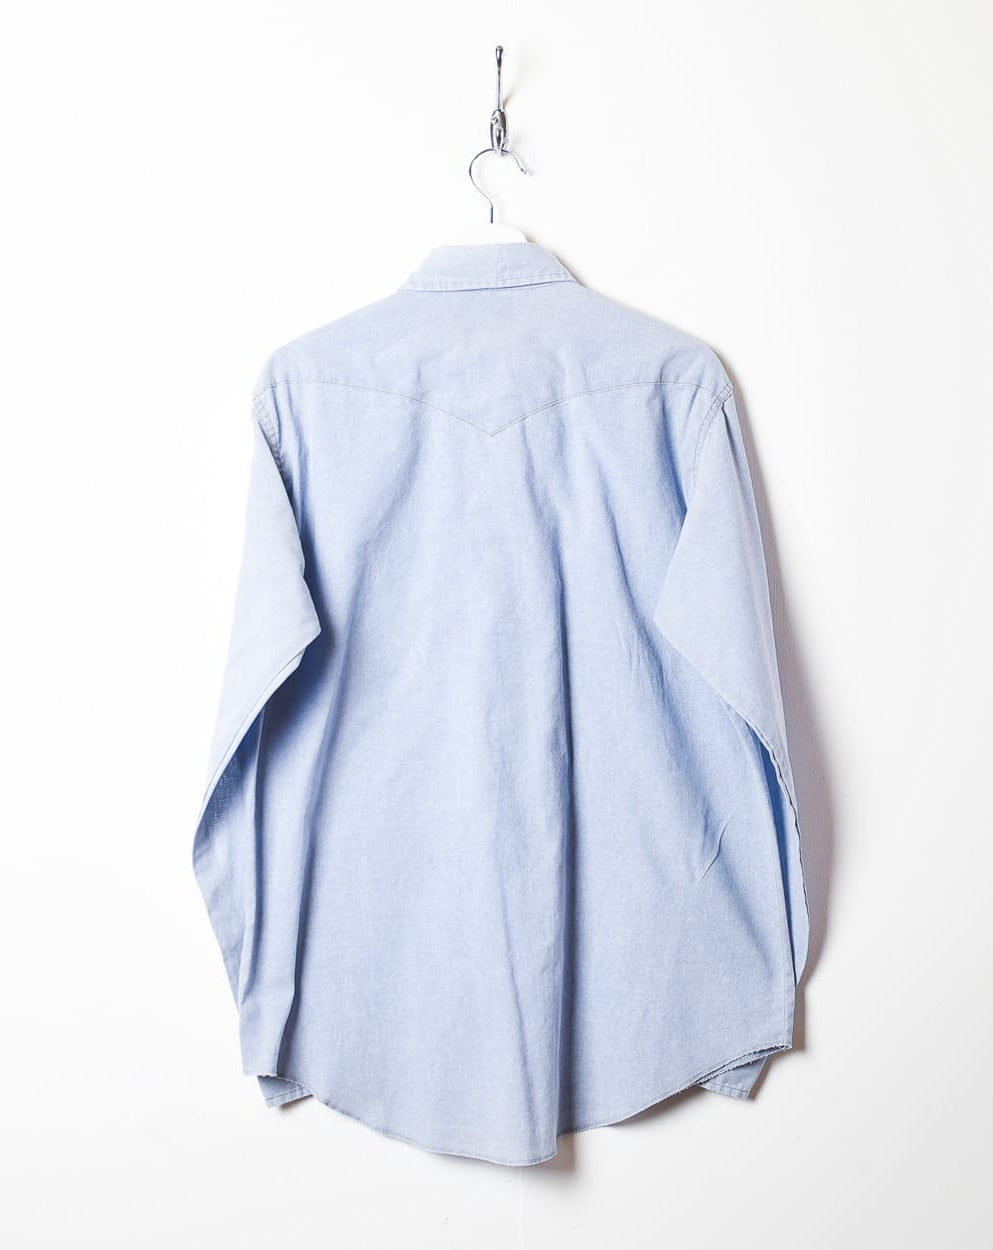 BabyBlue Wrangler Shirt - X-Large